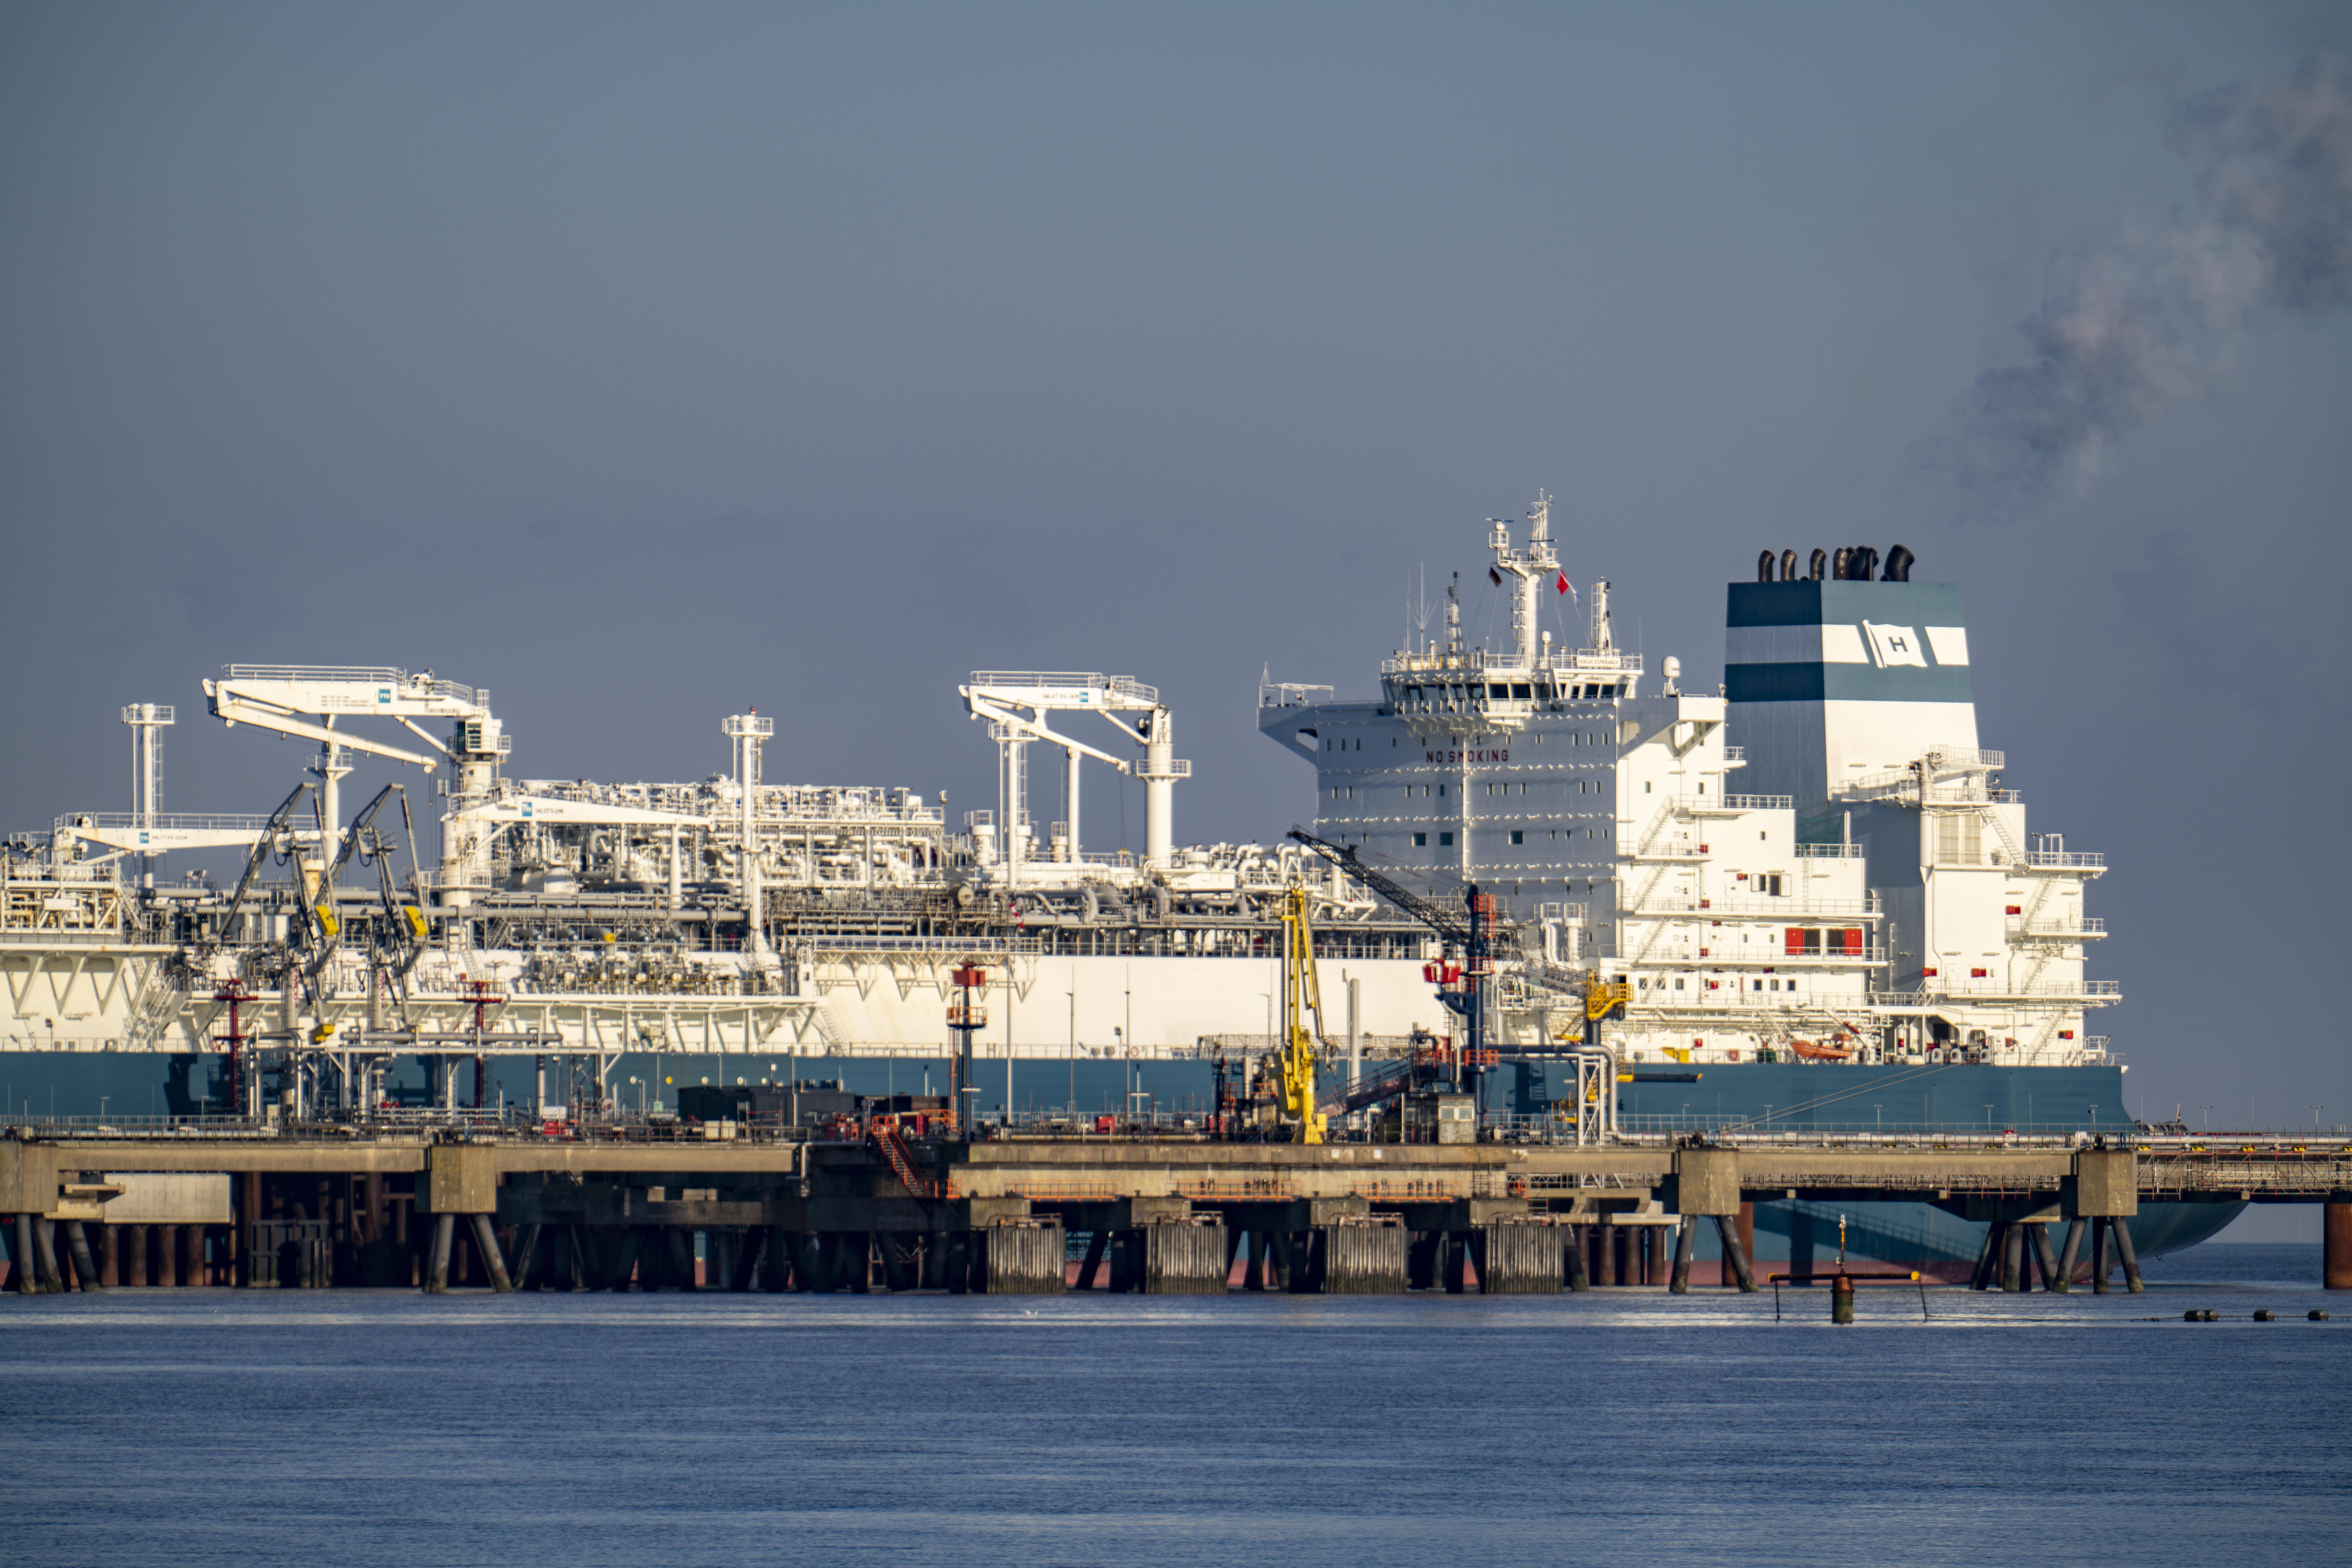 Die „Höegh Esperanza“ wandelt vor Wilhelmshaven LNG in Gas um – und leitet dabei Chlor ins Wasser ab. Eine potentielle Gefahr für das Ökosystem.